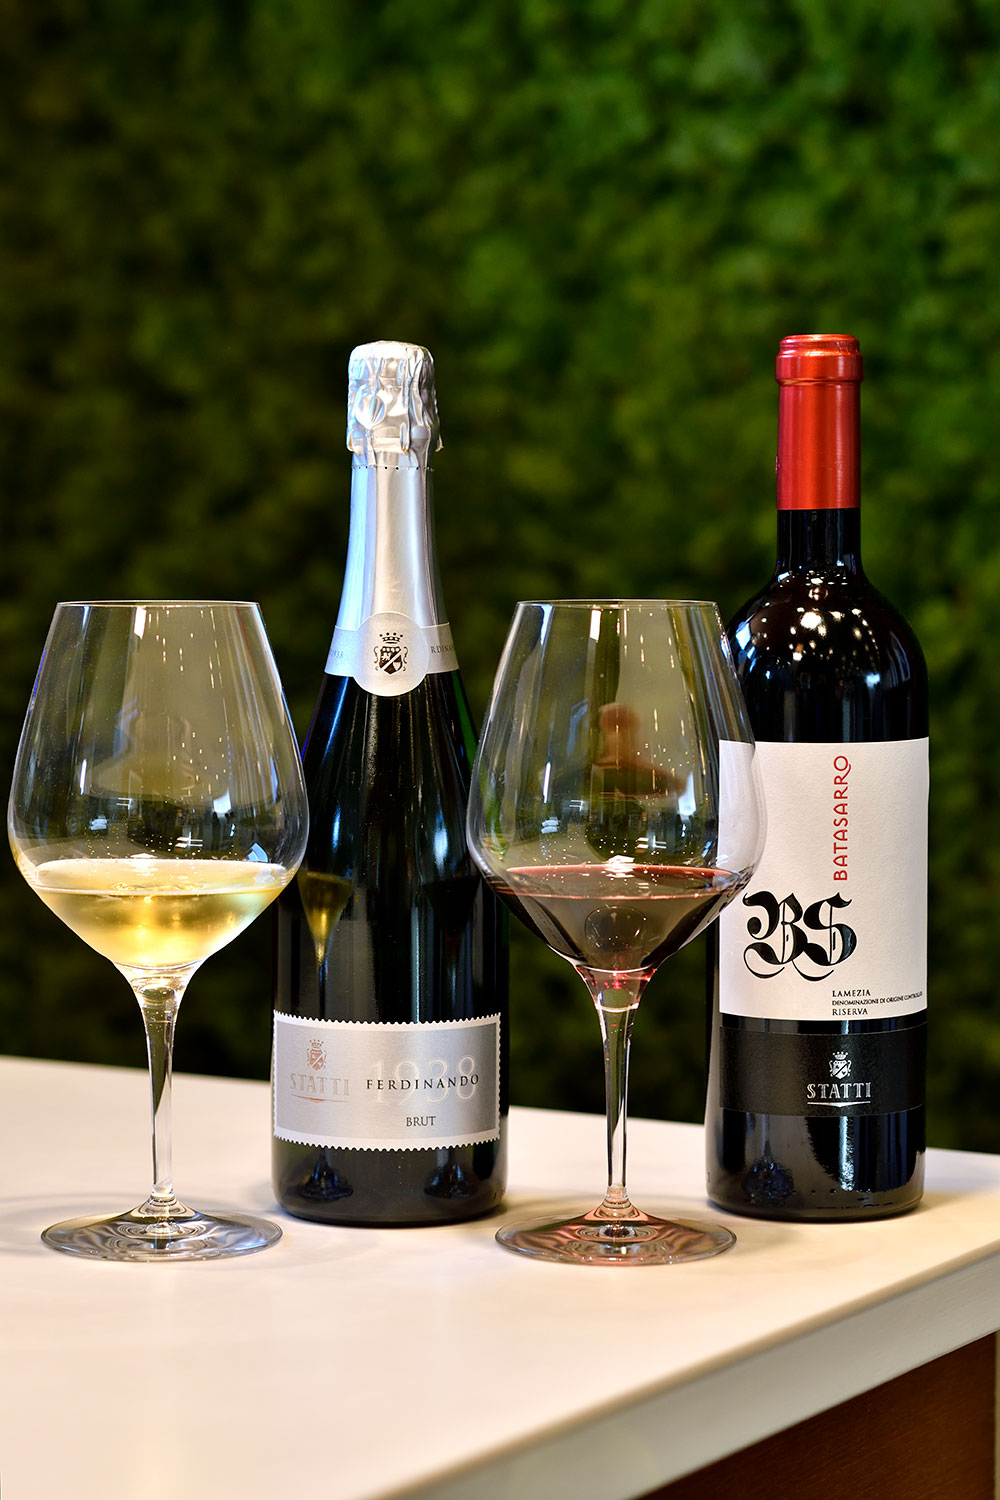 メインの白ワインにはマントニコ・ビアンコ、赤ワインにはガリオッポという種類のブドウが使われている。